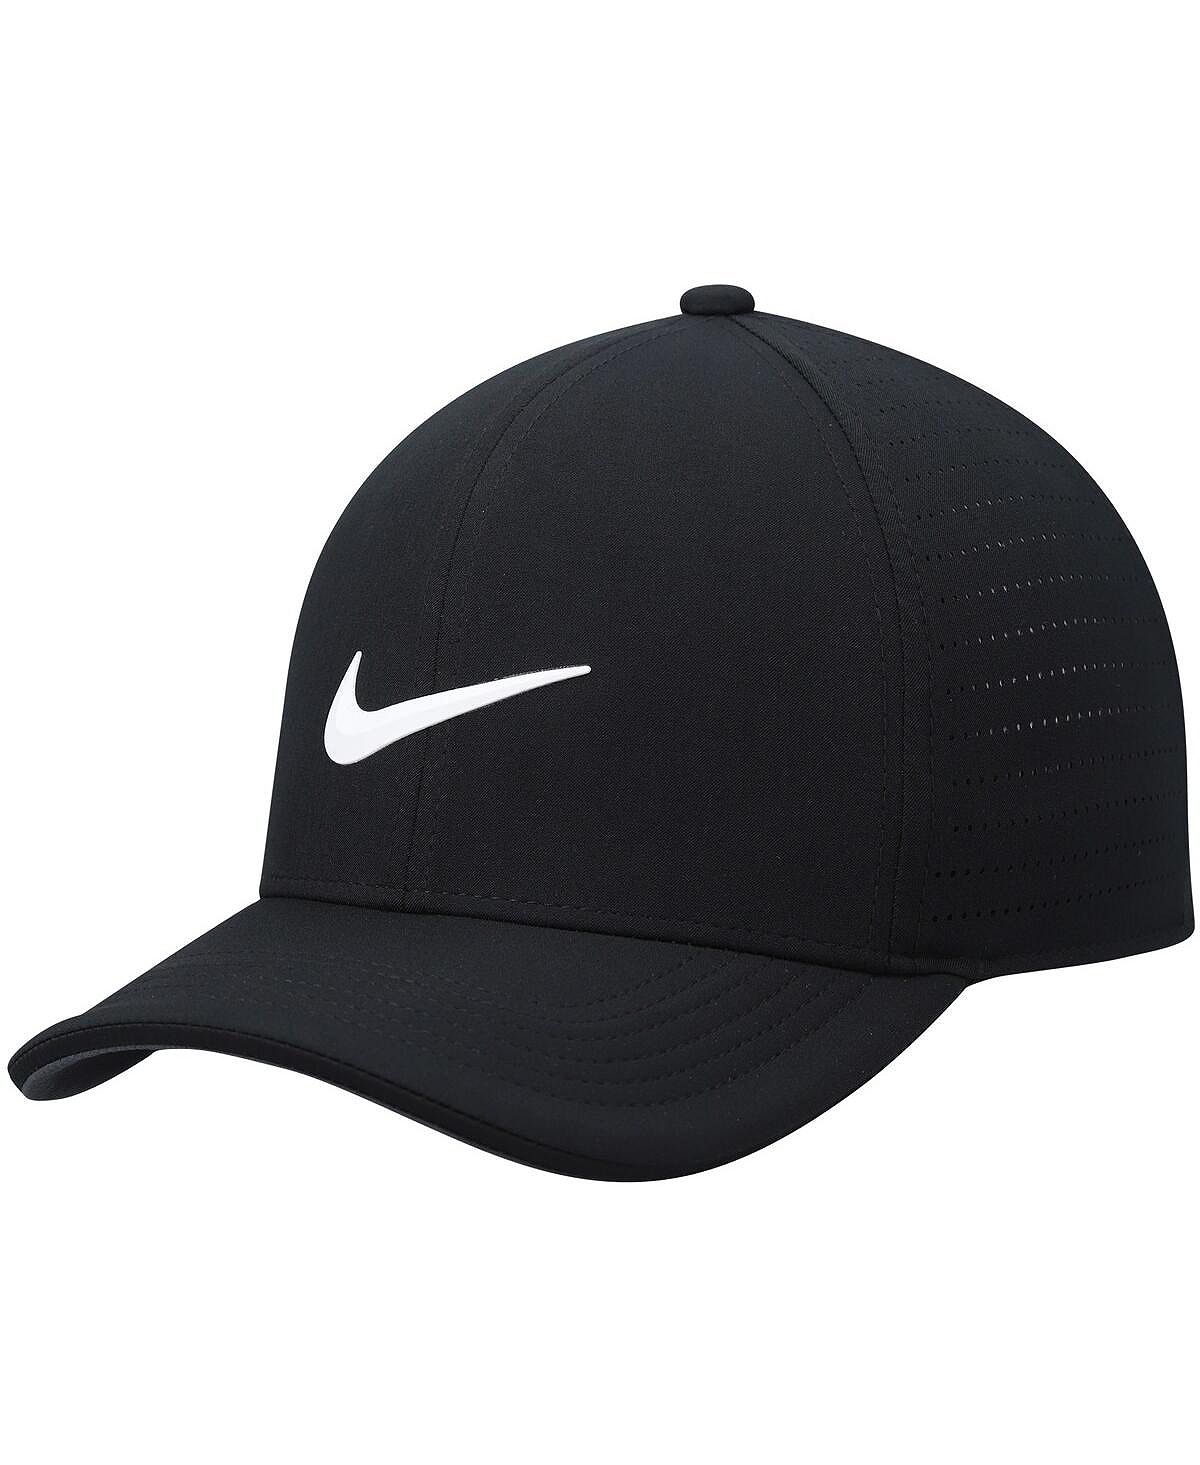 Мужская приталенная шляпа Aerobill Classic99 Performance Nike